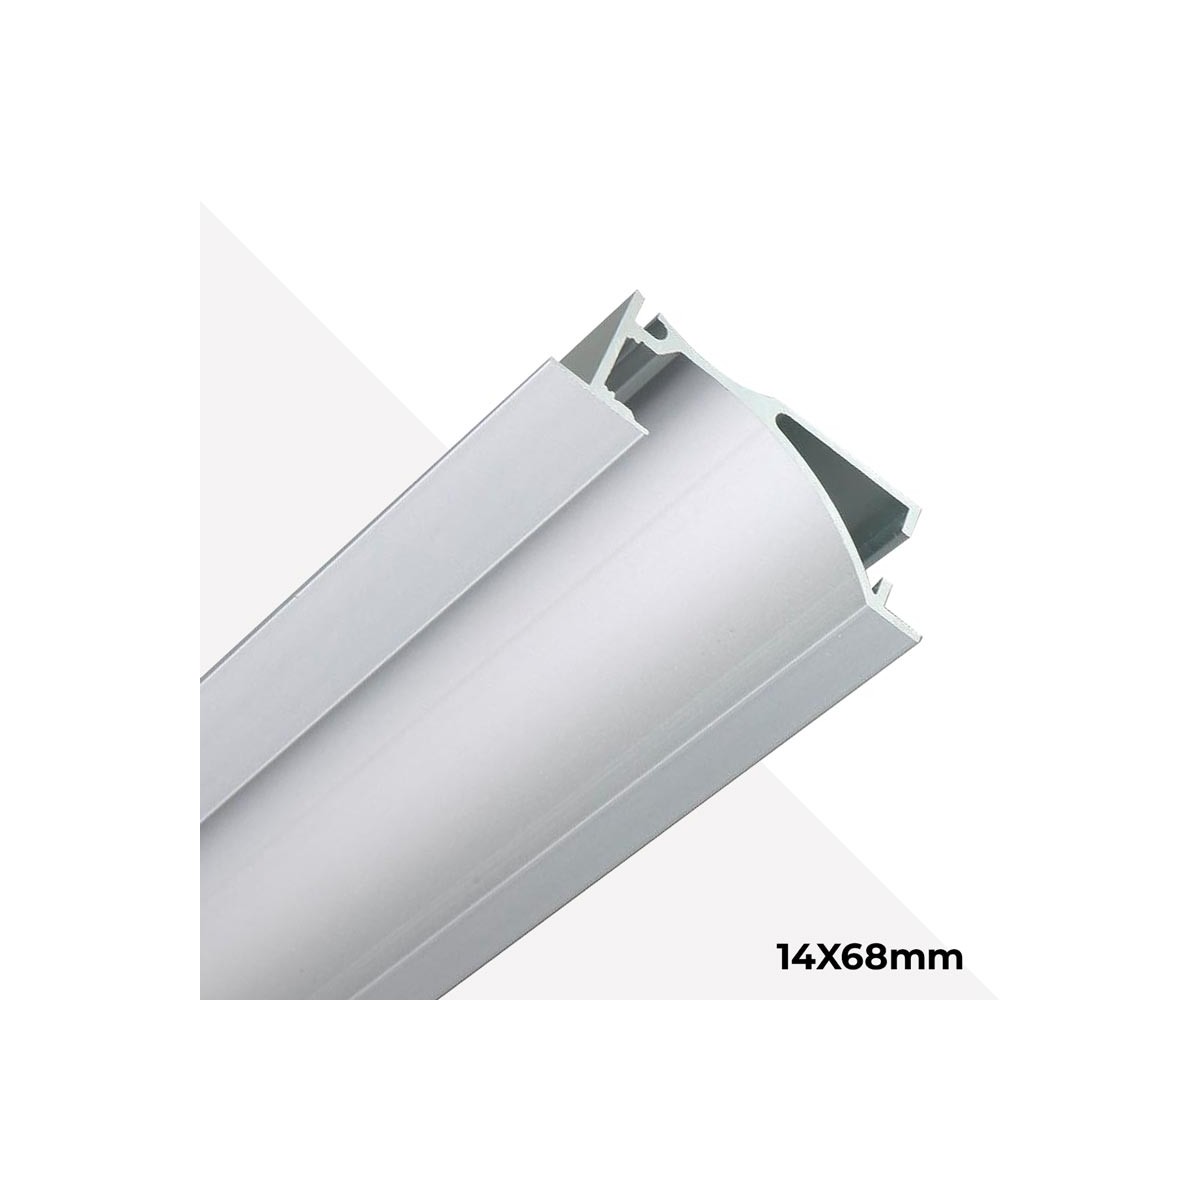 Perfil de alumínio para iluminação indirecta 14x68mm (2mt)